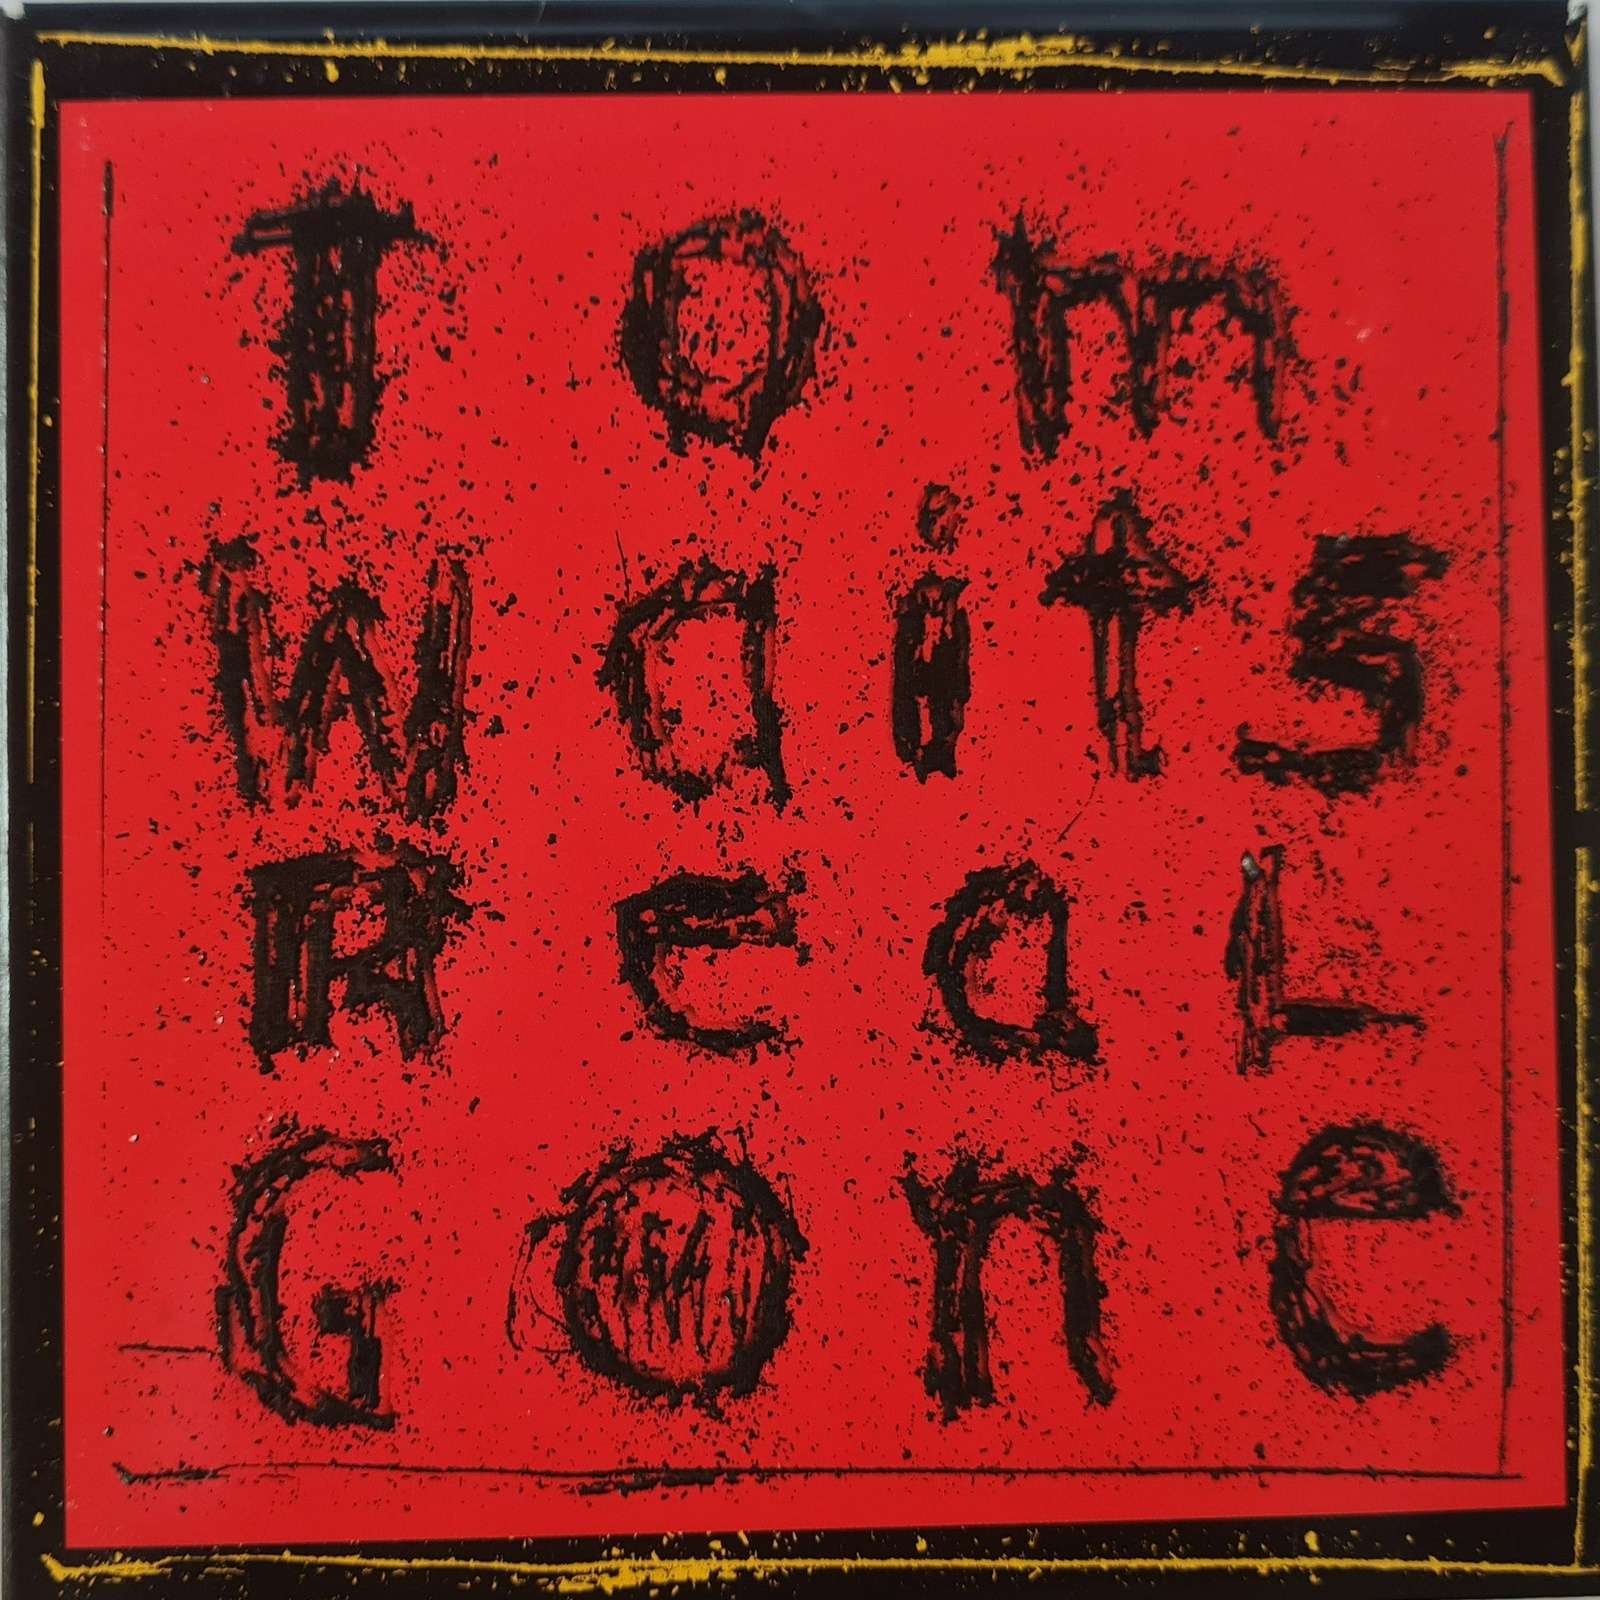 Tom Waits - Real Gone (CD)